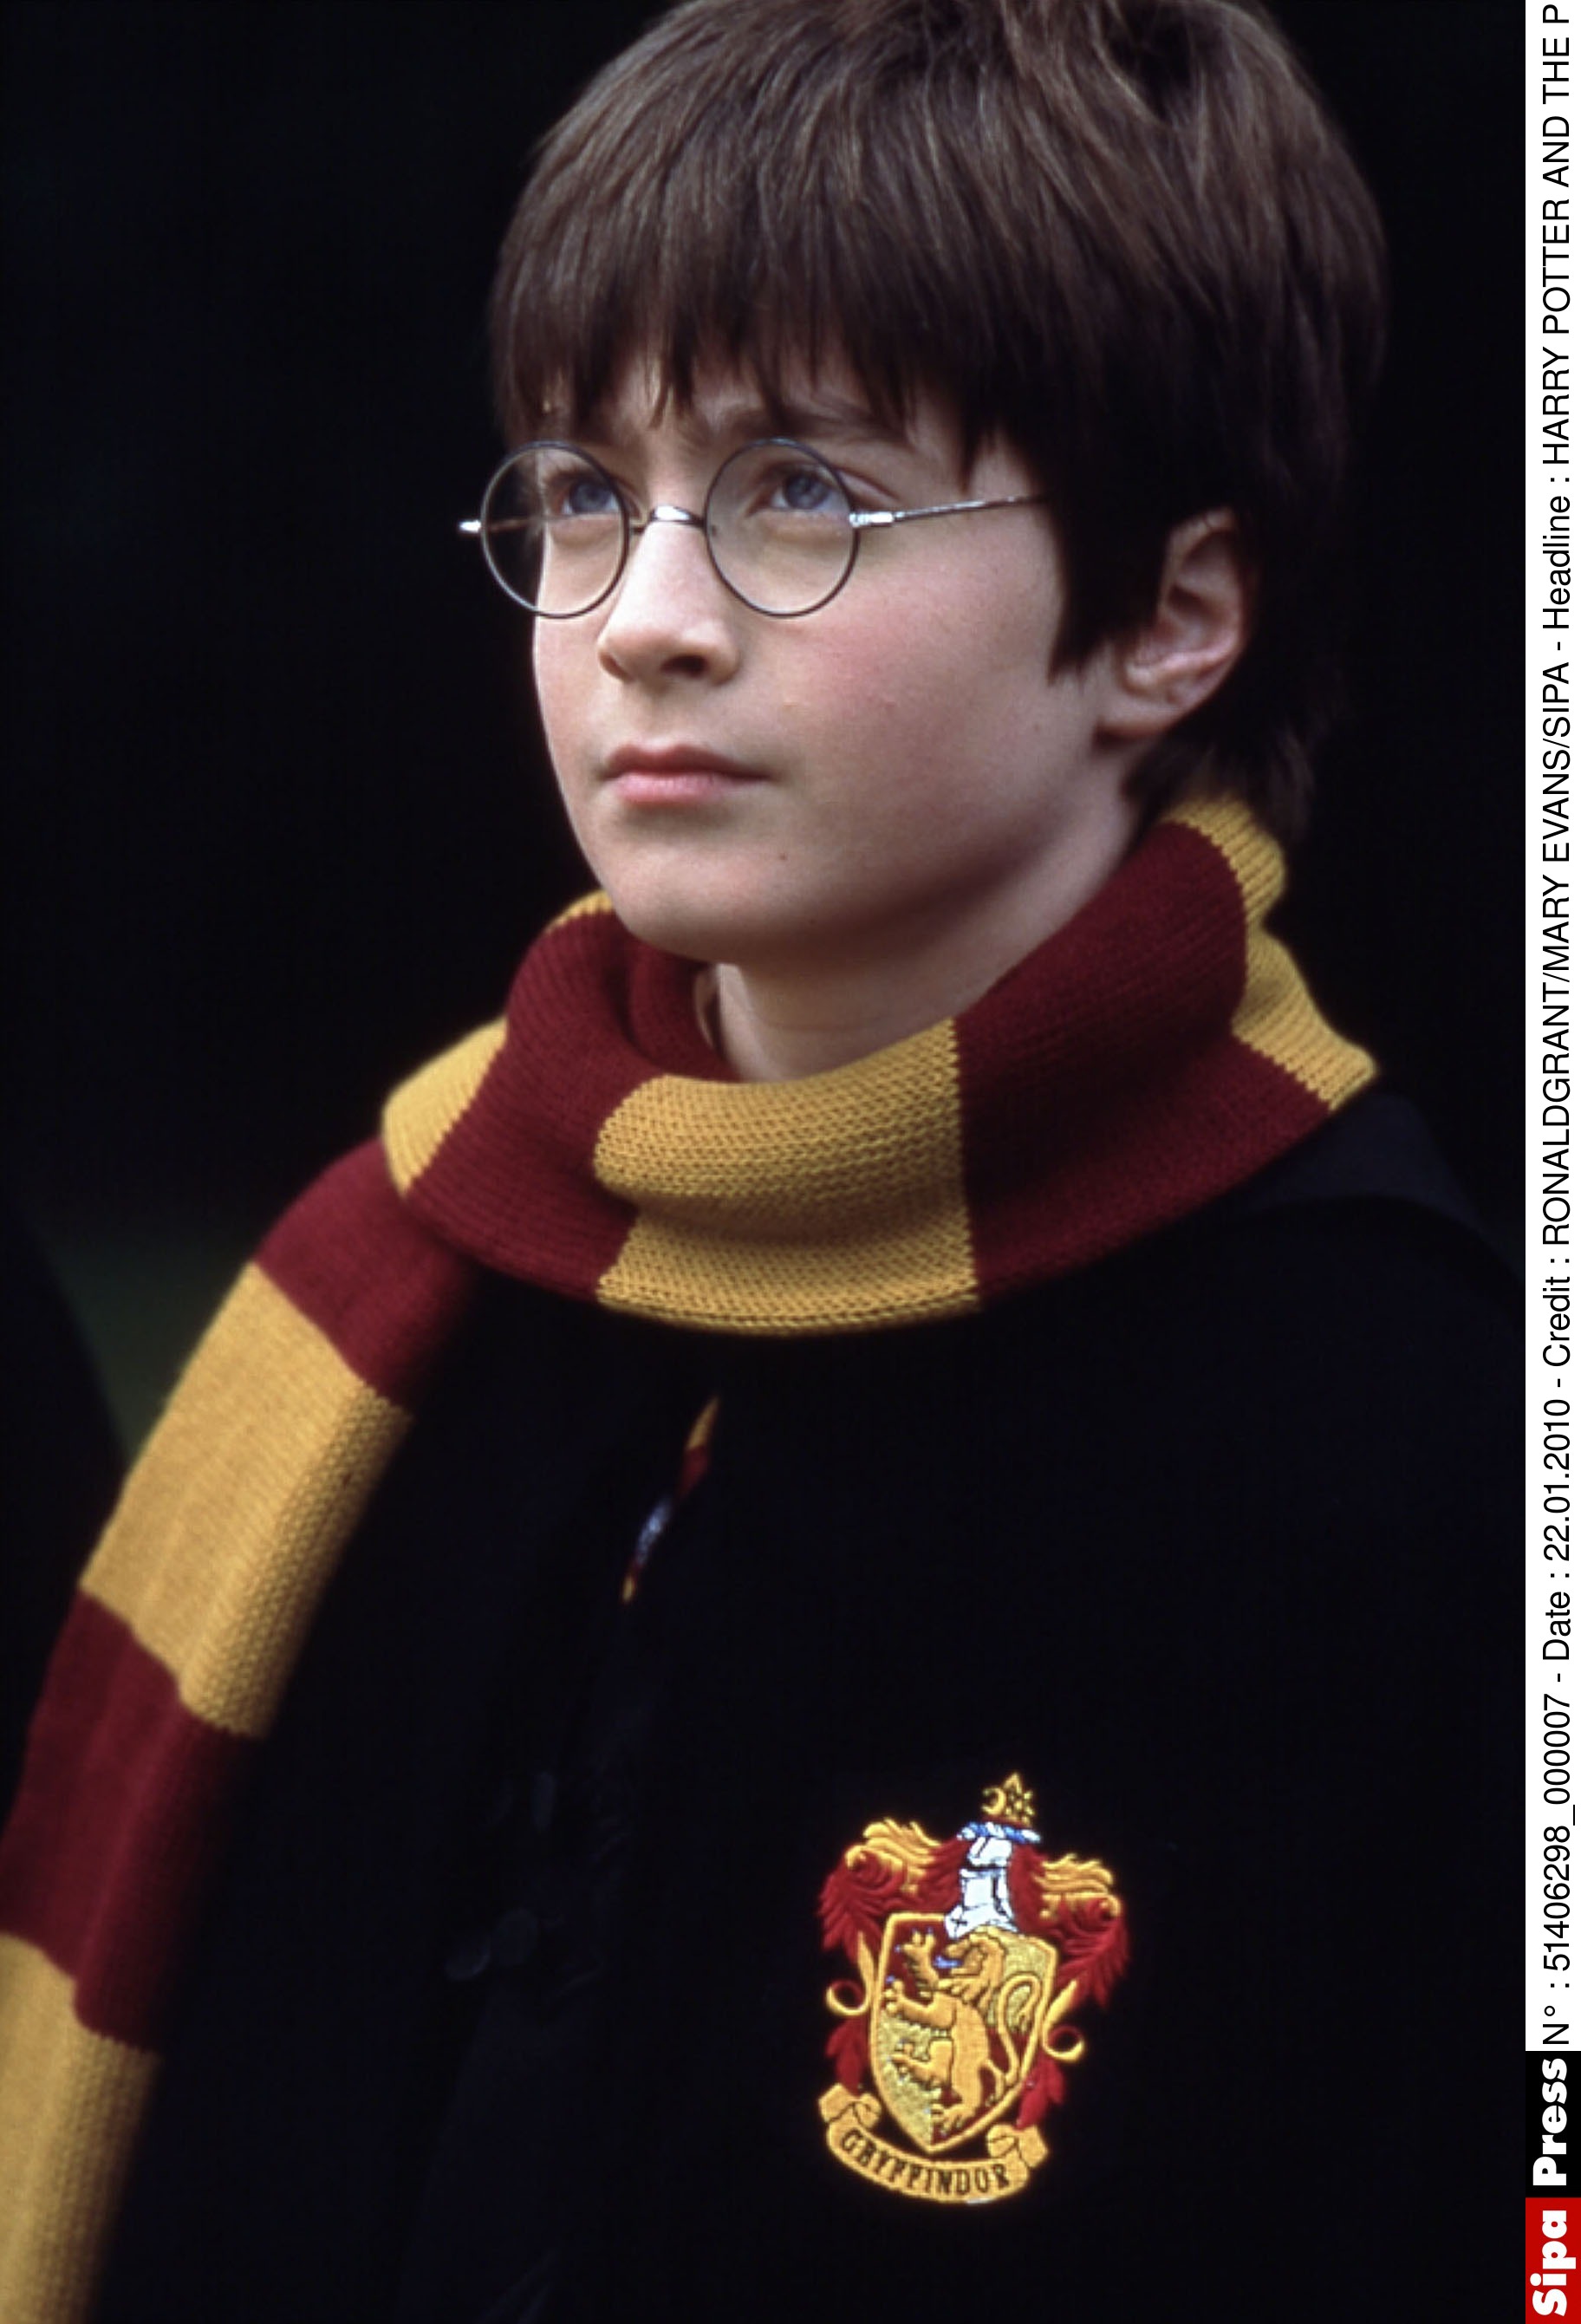 Daniel Radcliffe Harry Potter jeune